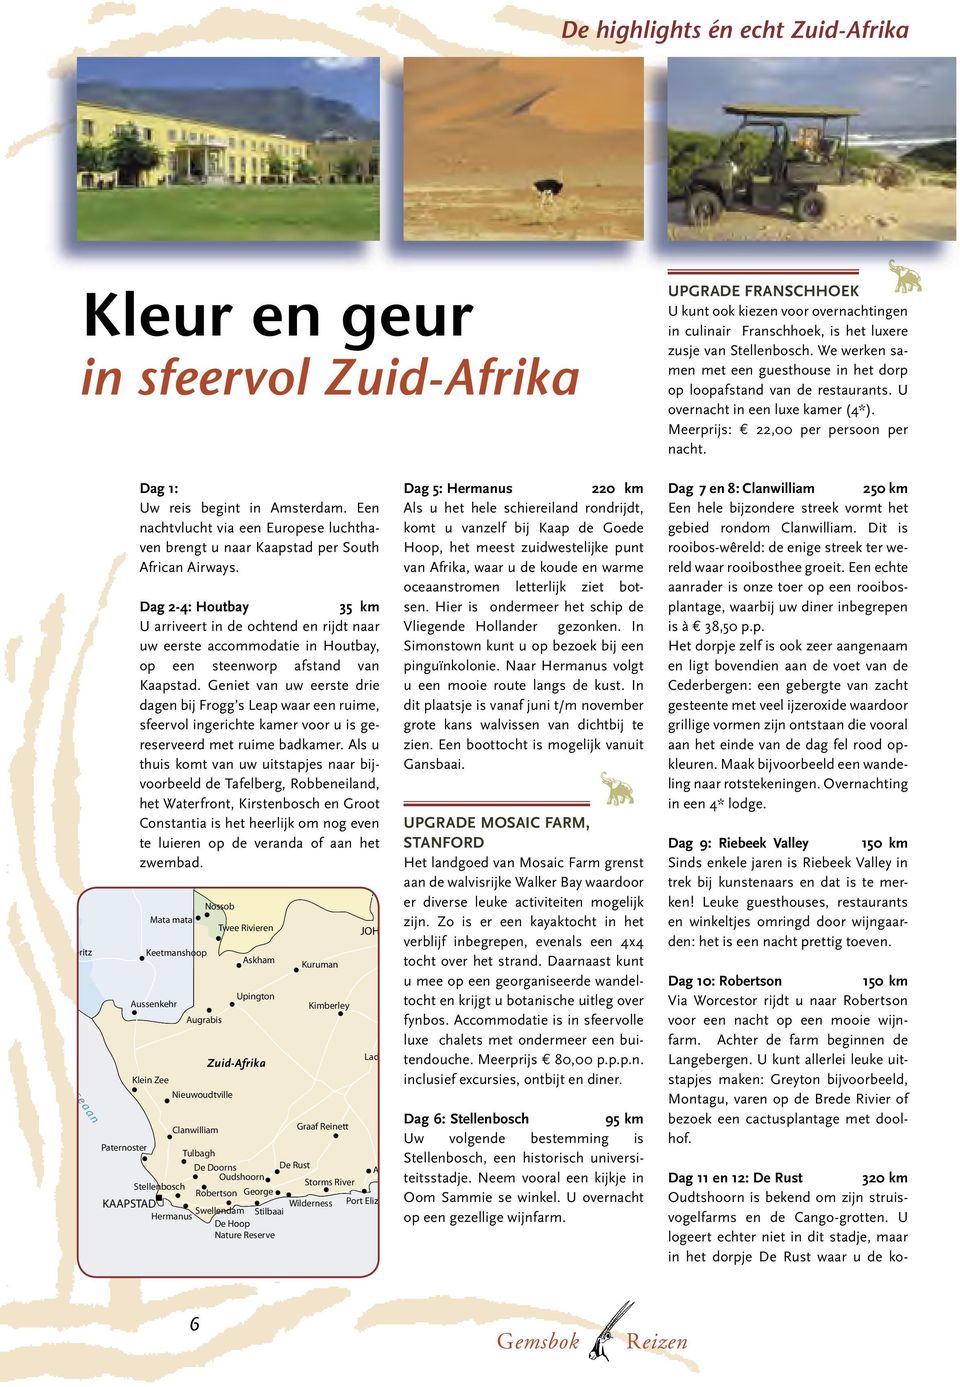 Dag 1: Dag 5: Hermanus 220 km Uw reis begint in Amsterdam. Een nachtvlucht via een Europese luchthaven brengt u naar Kaapstad per South African Airways.